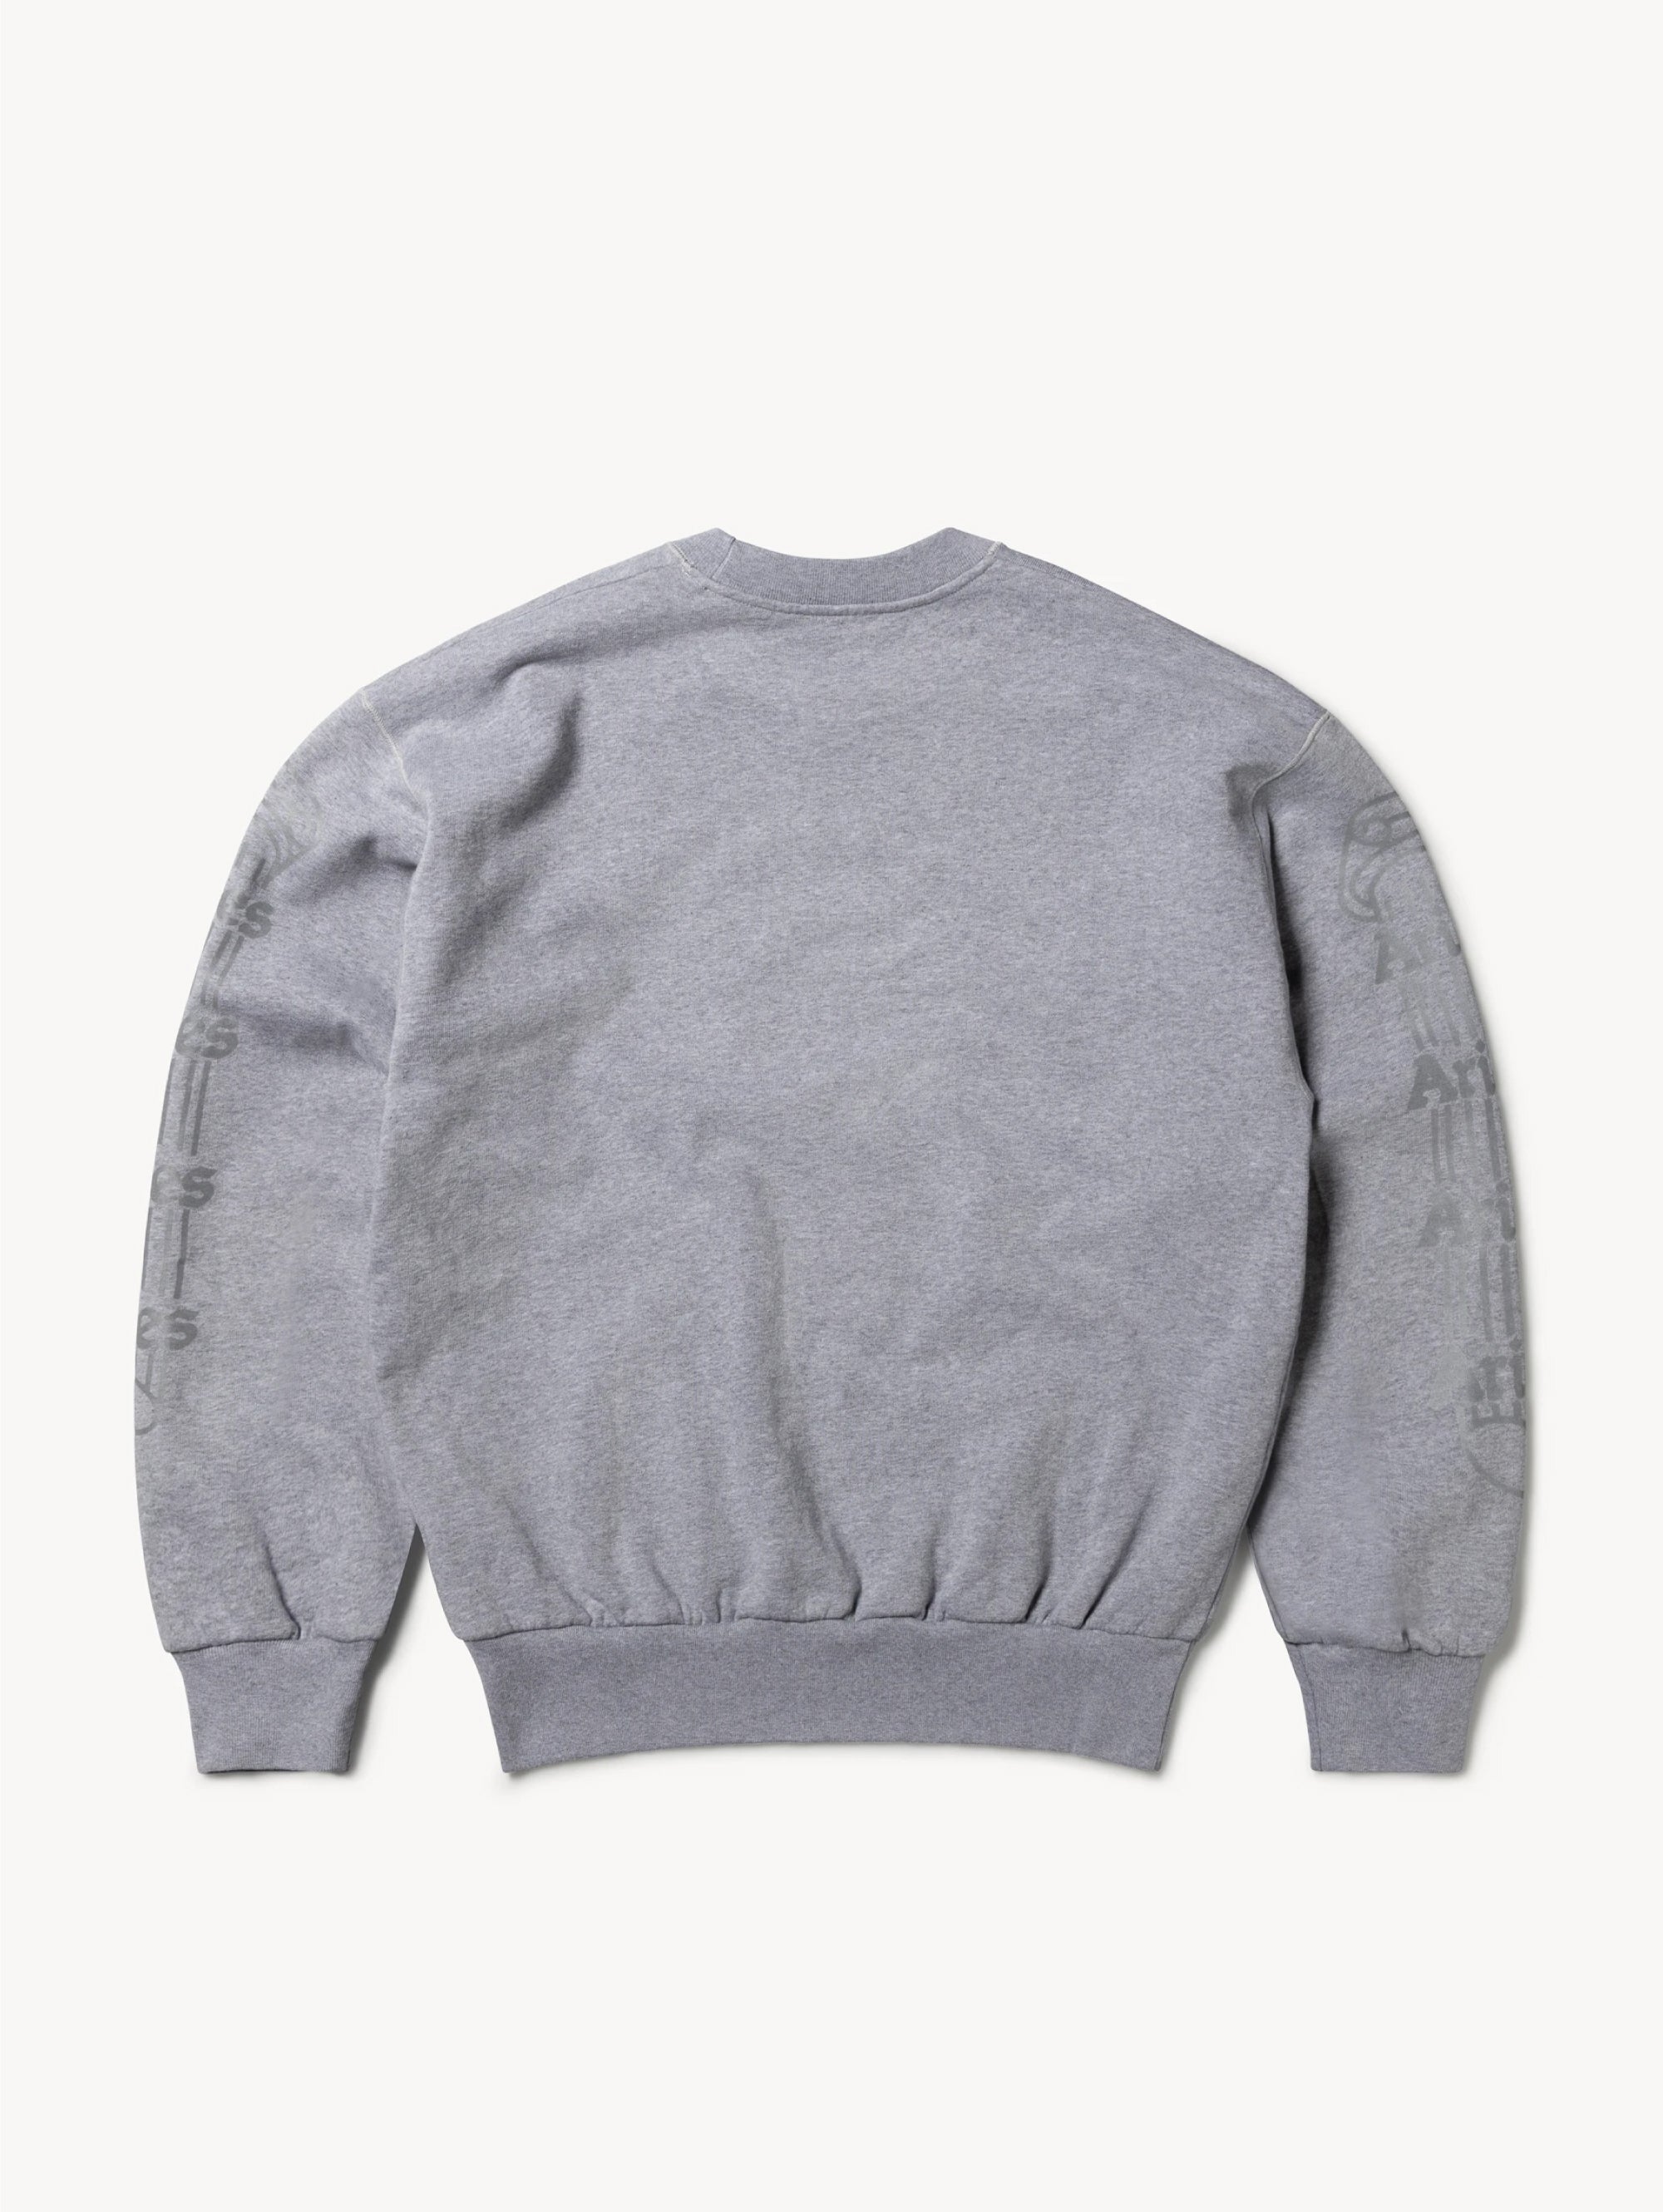 Crewneck Sweatshirt with Gray Reflective Logo